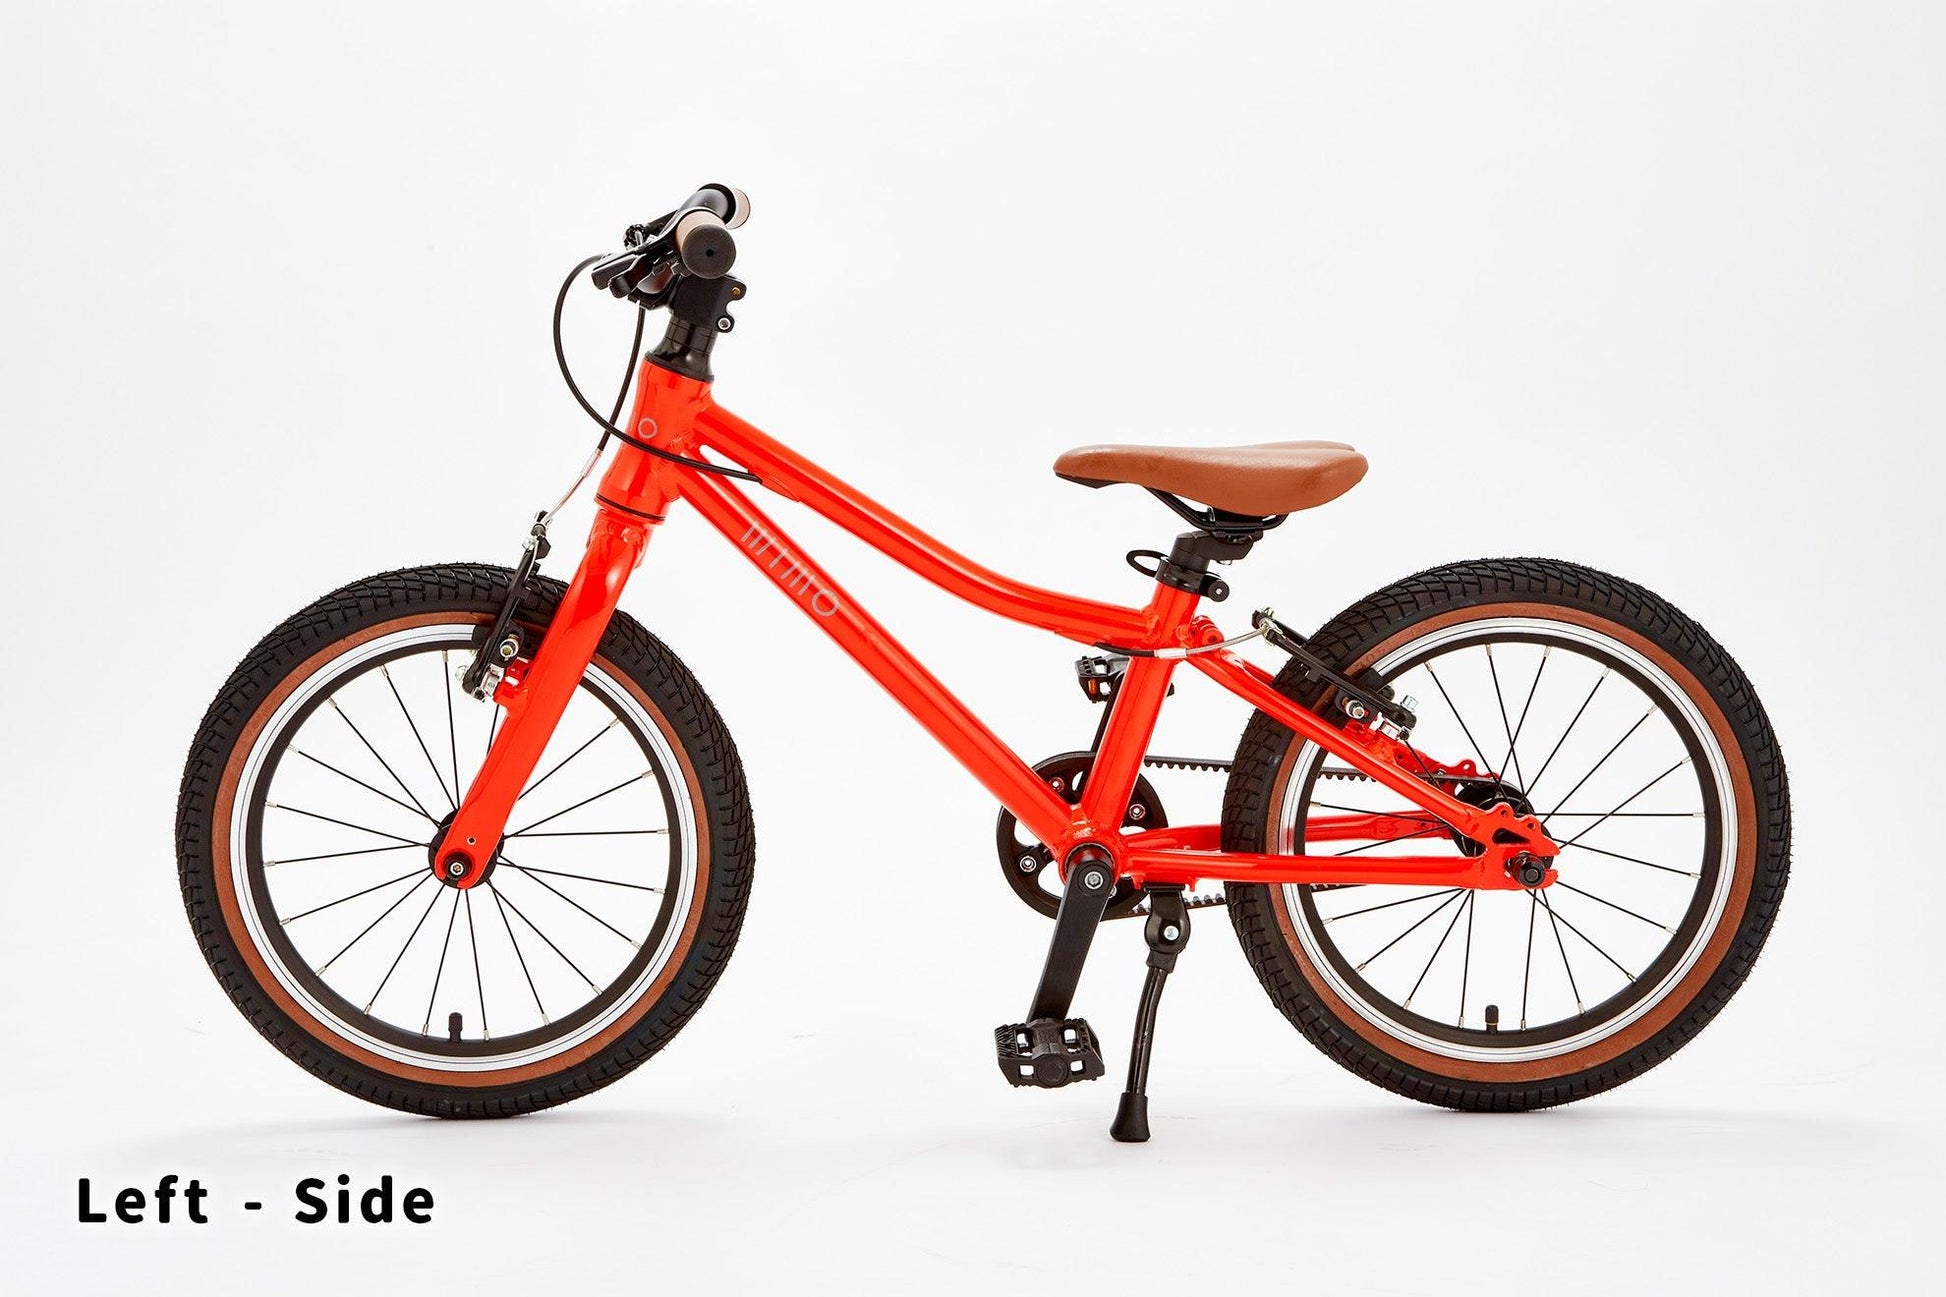 子供自転車 wimo kids 16 (Kabocha / カボチャ）| 3.5-6才 | 100-135cm | 6.45kg | - wimo online store - オシャレ電動自転車 - 最軽量級子供自転車